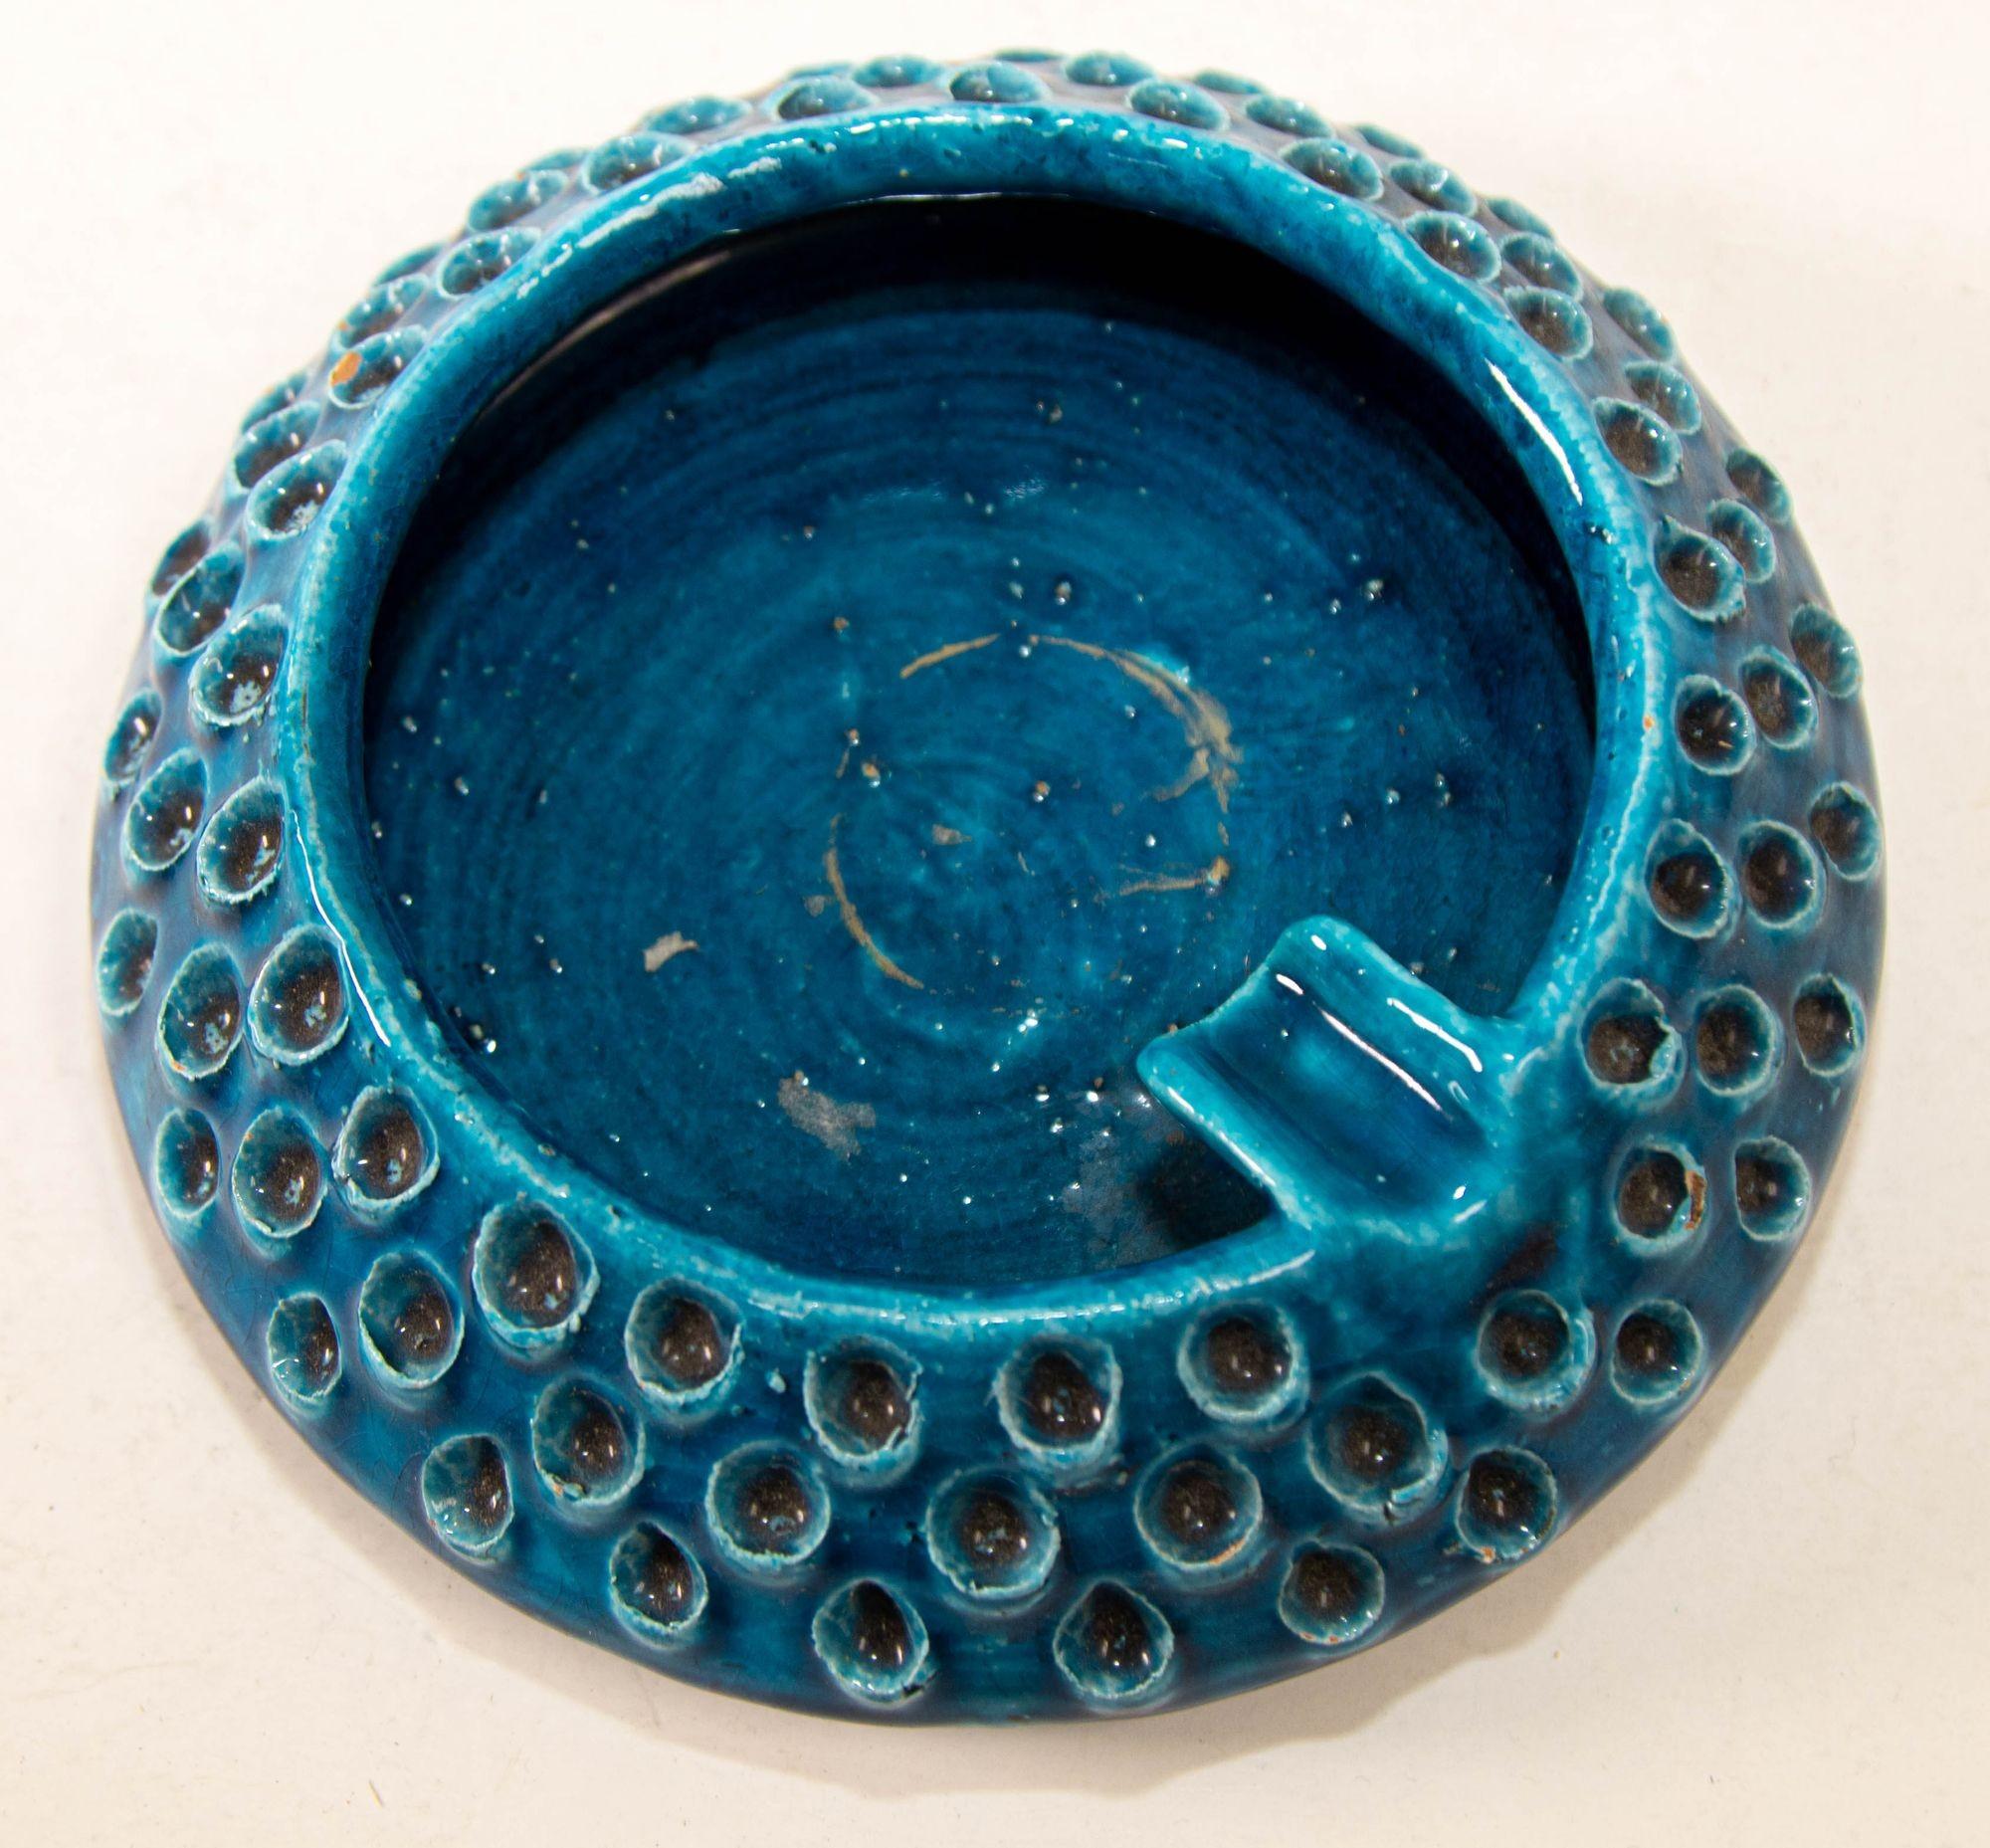 Cendrier en céramique bleue fabriqué à la main en Italie par Aldo Londi pour Bitossi
Cendrier 